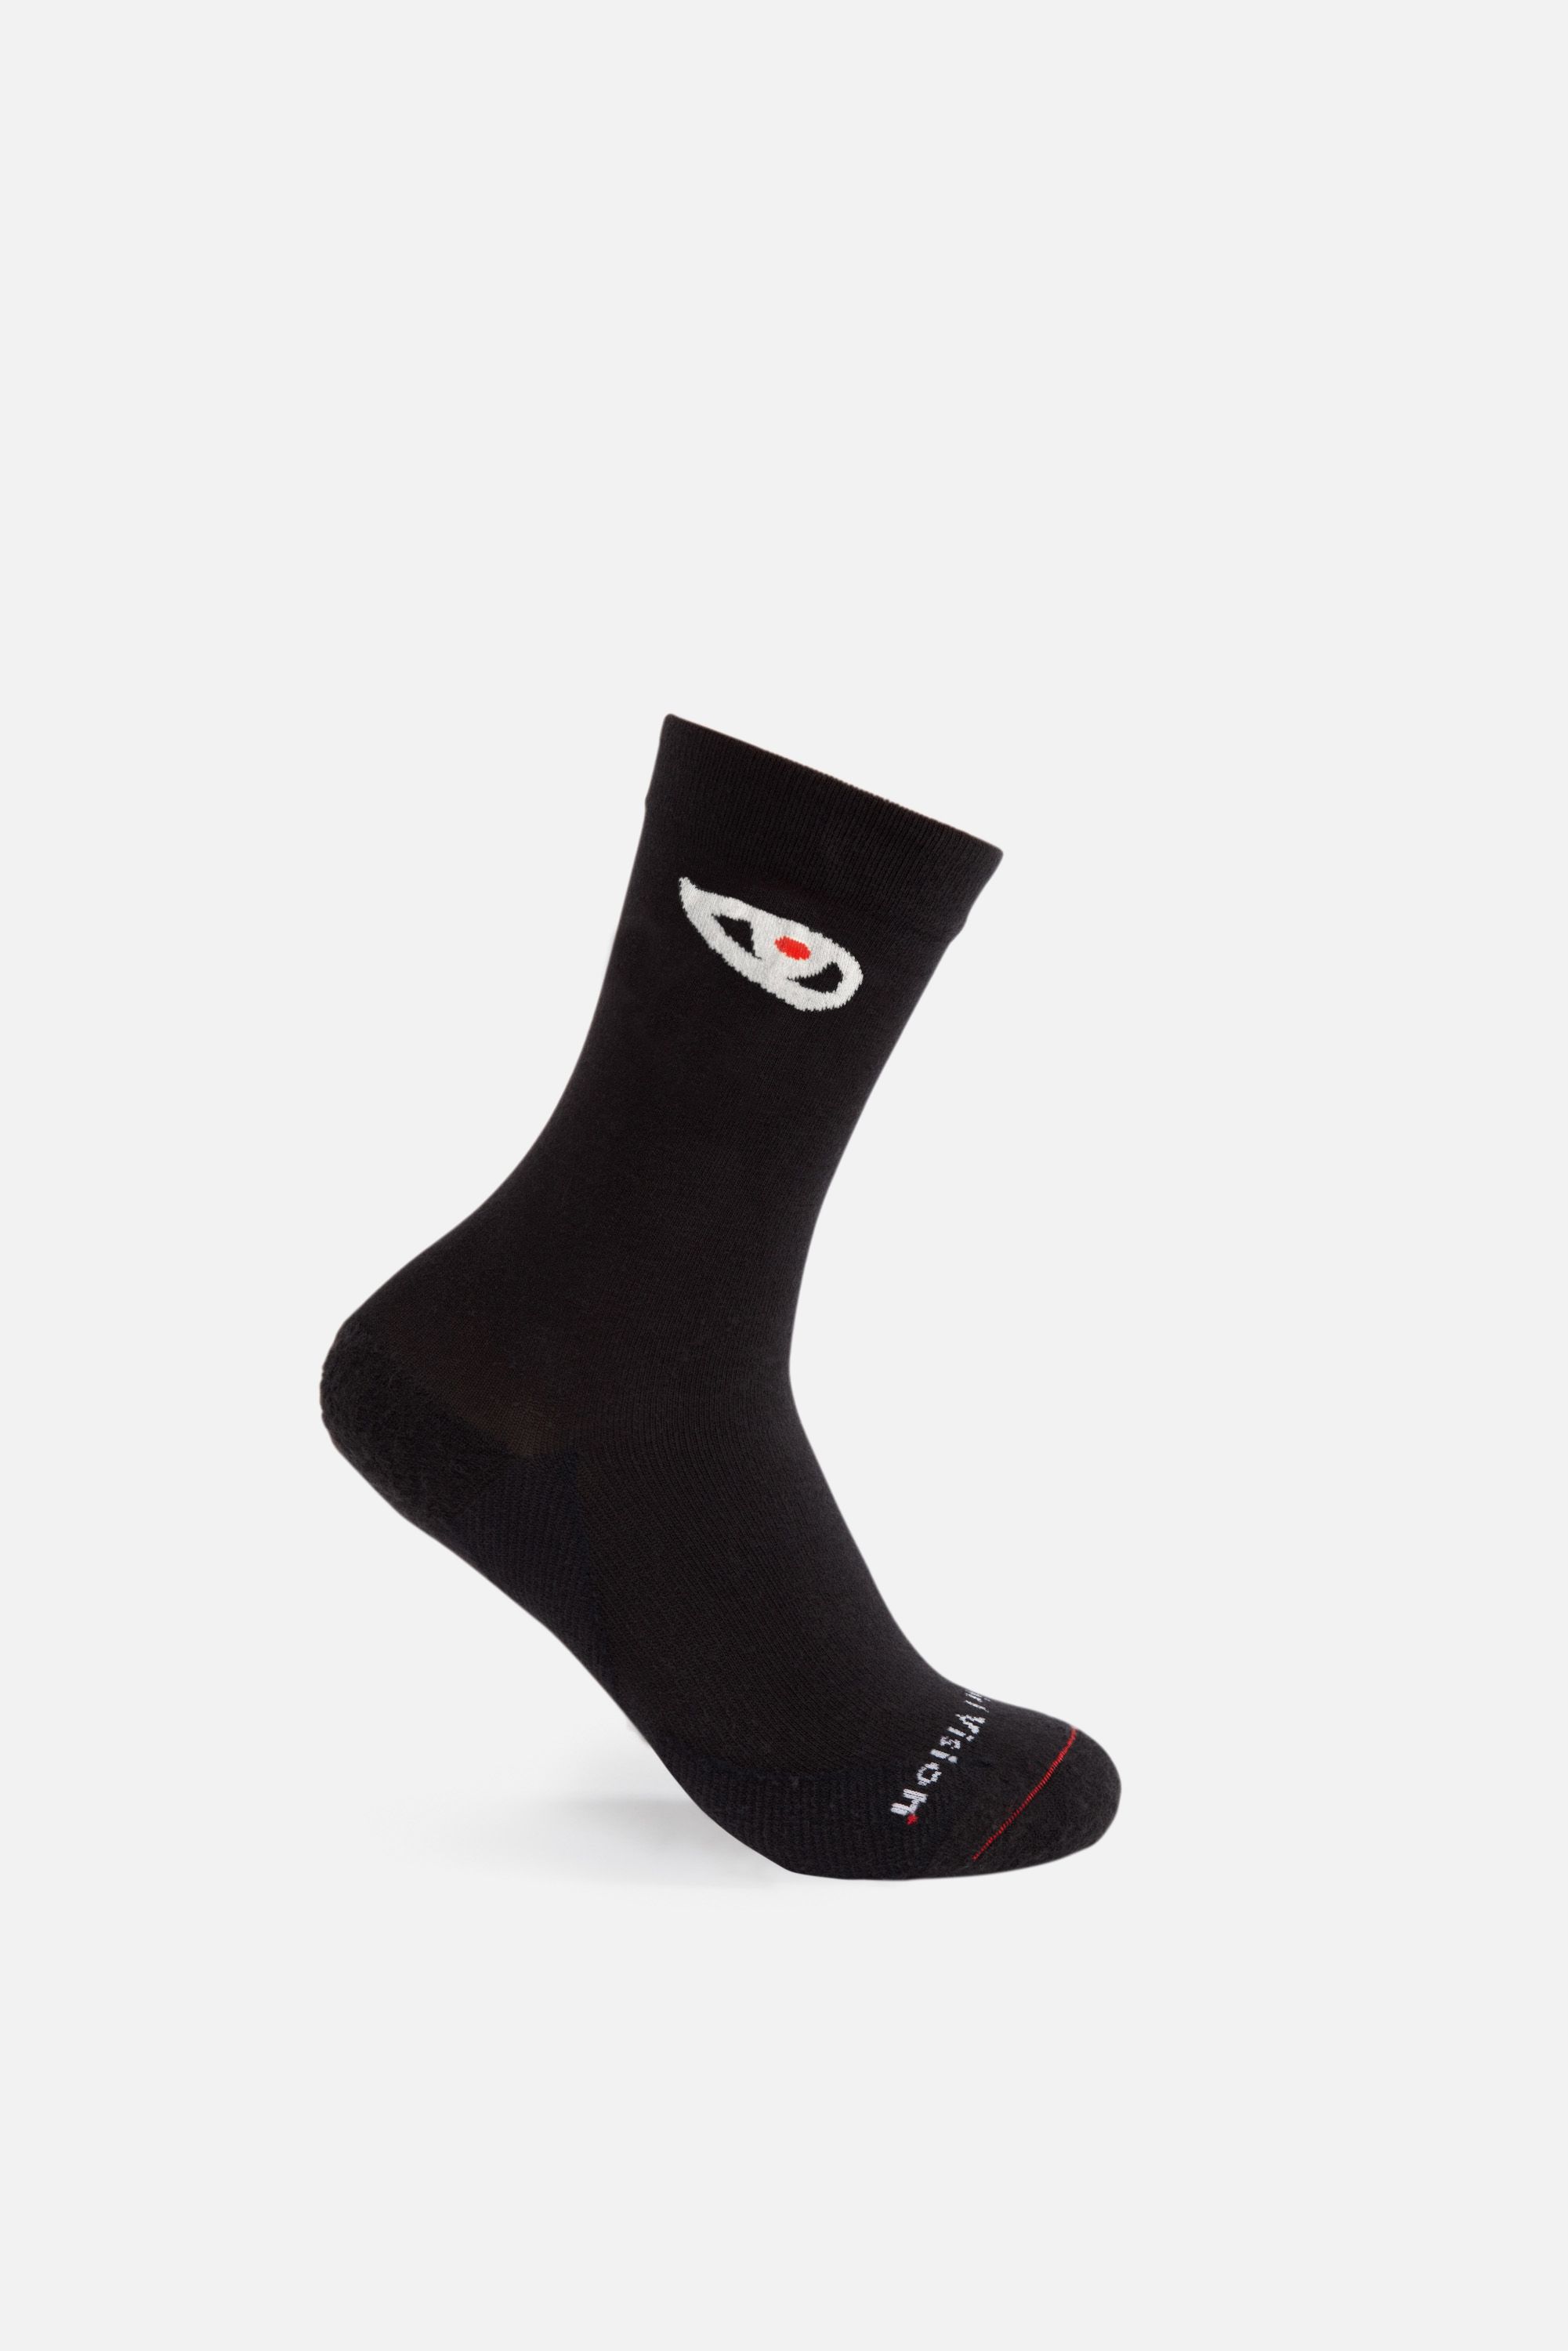 Yoshi Performance Socks, Black